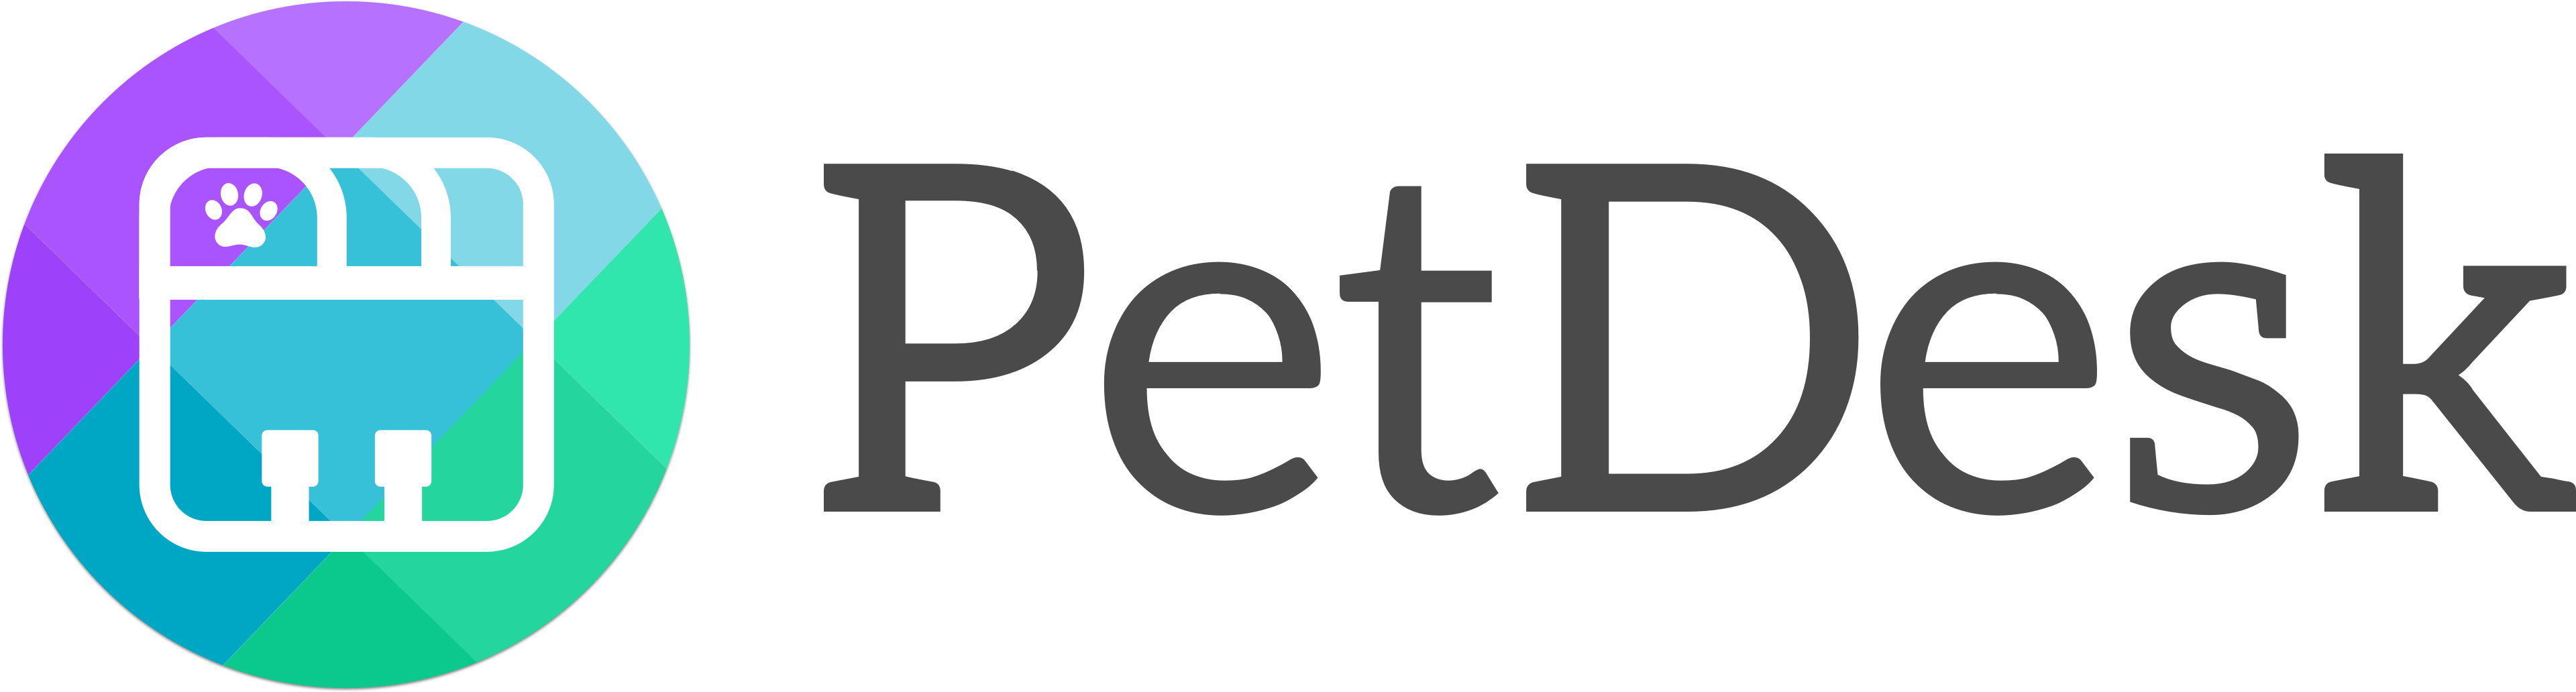 Belton Vet Pet Desk App